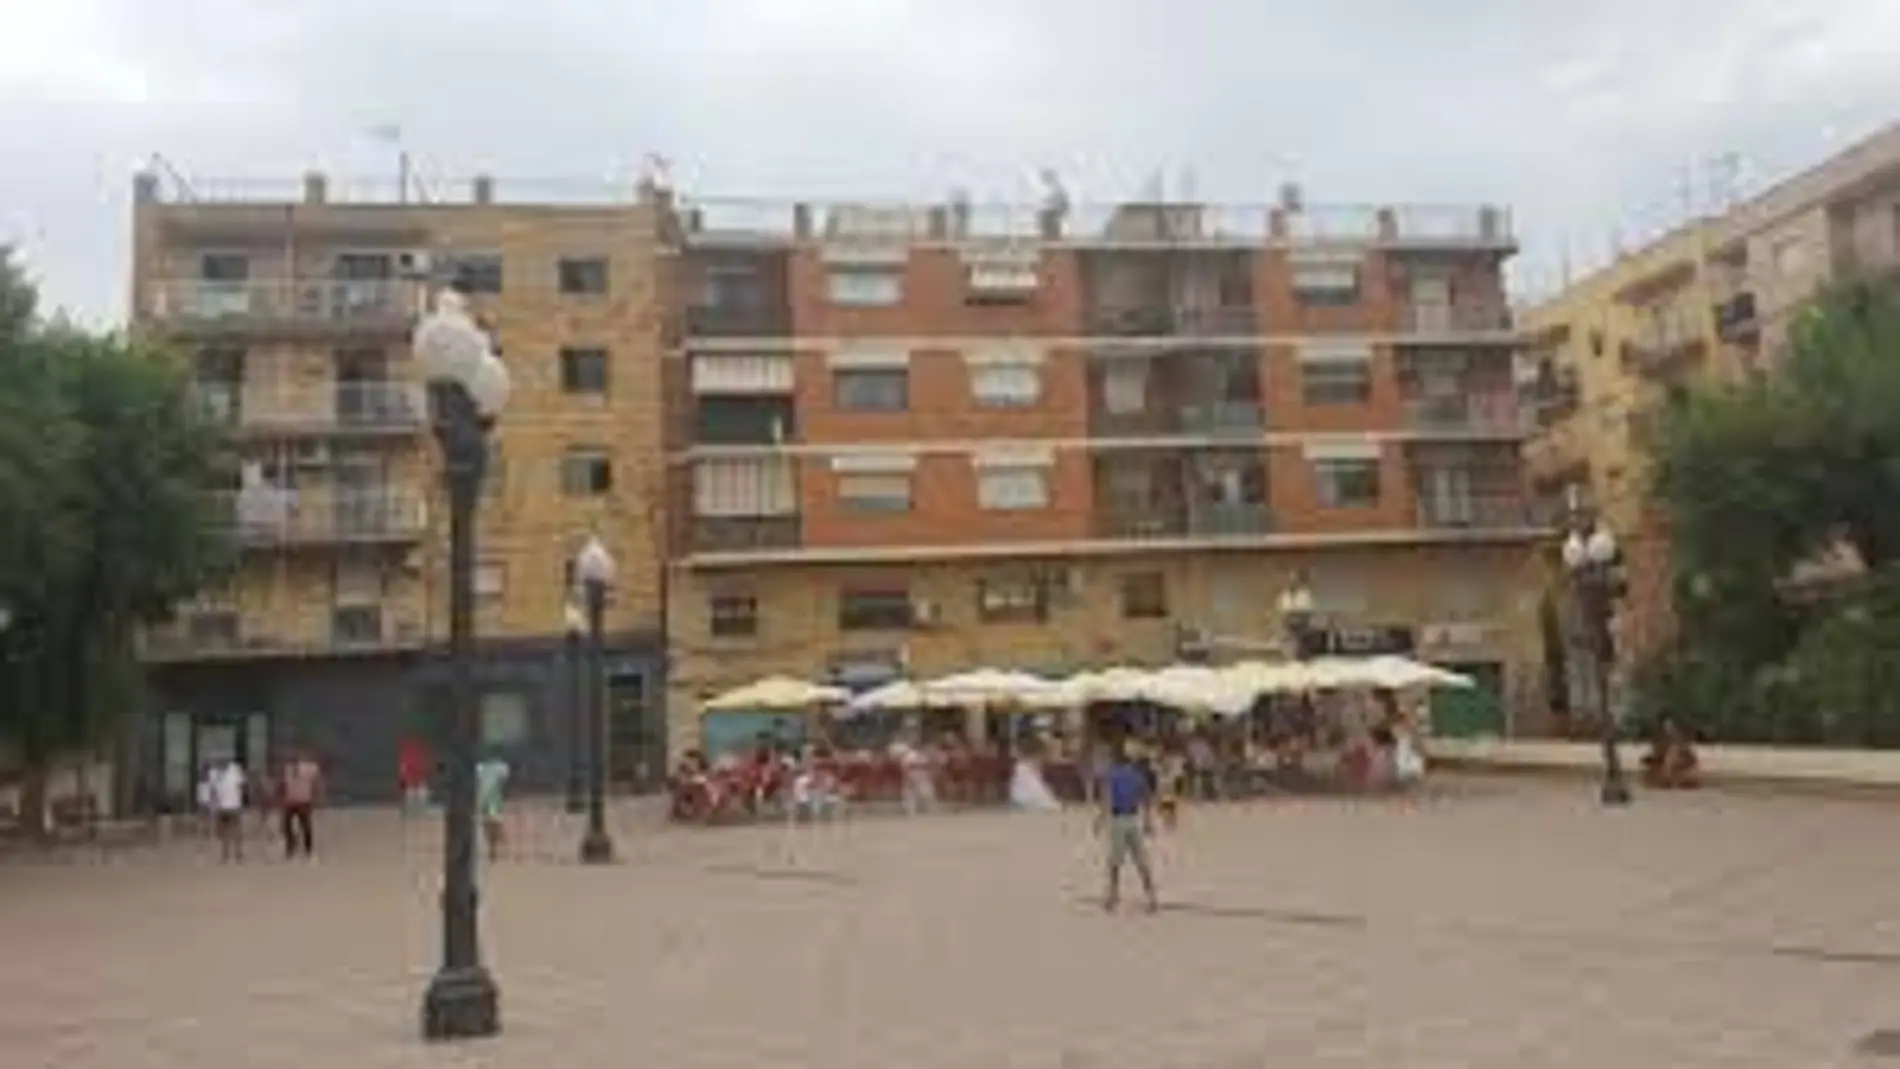 El barrio de Bonavista, en Tarragona